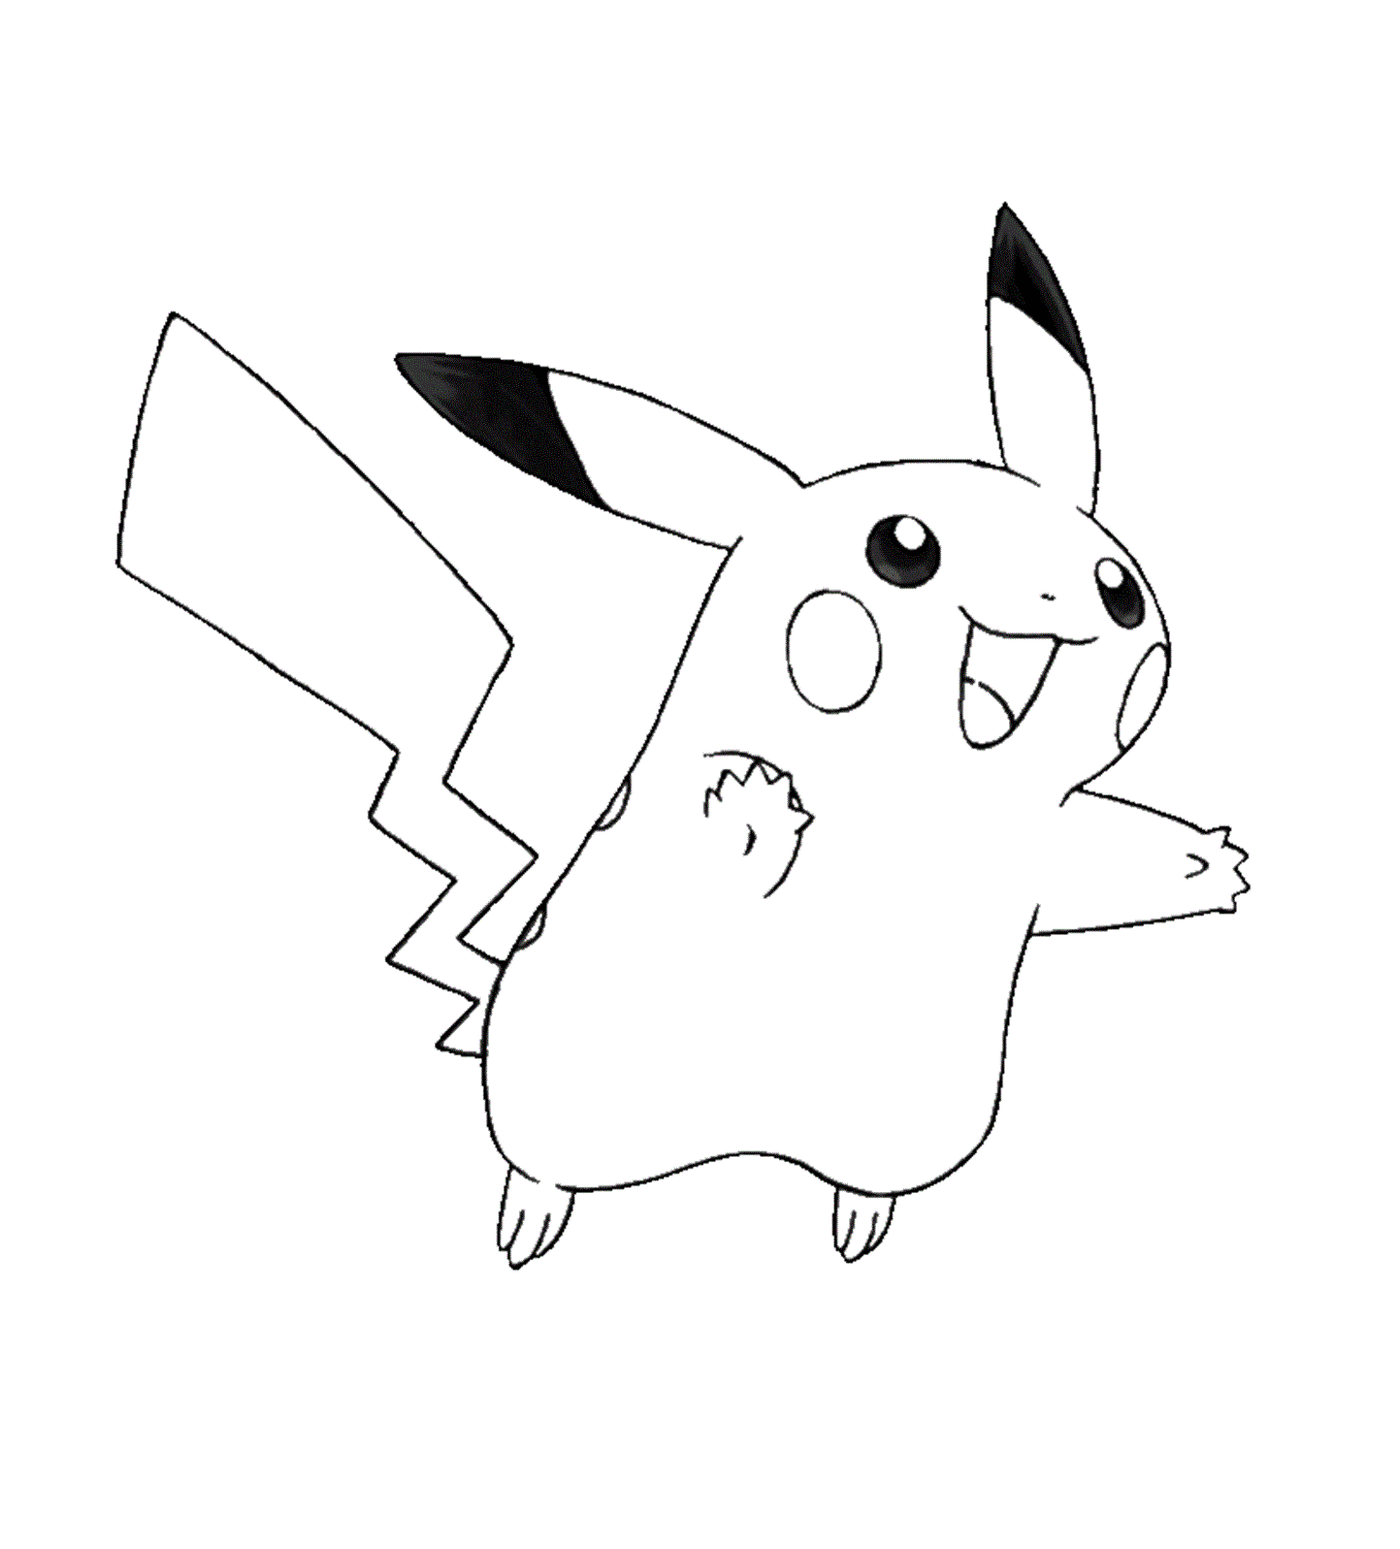  Pikachu com uma expressão tranquila 